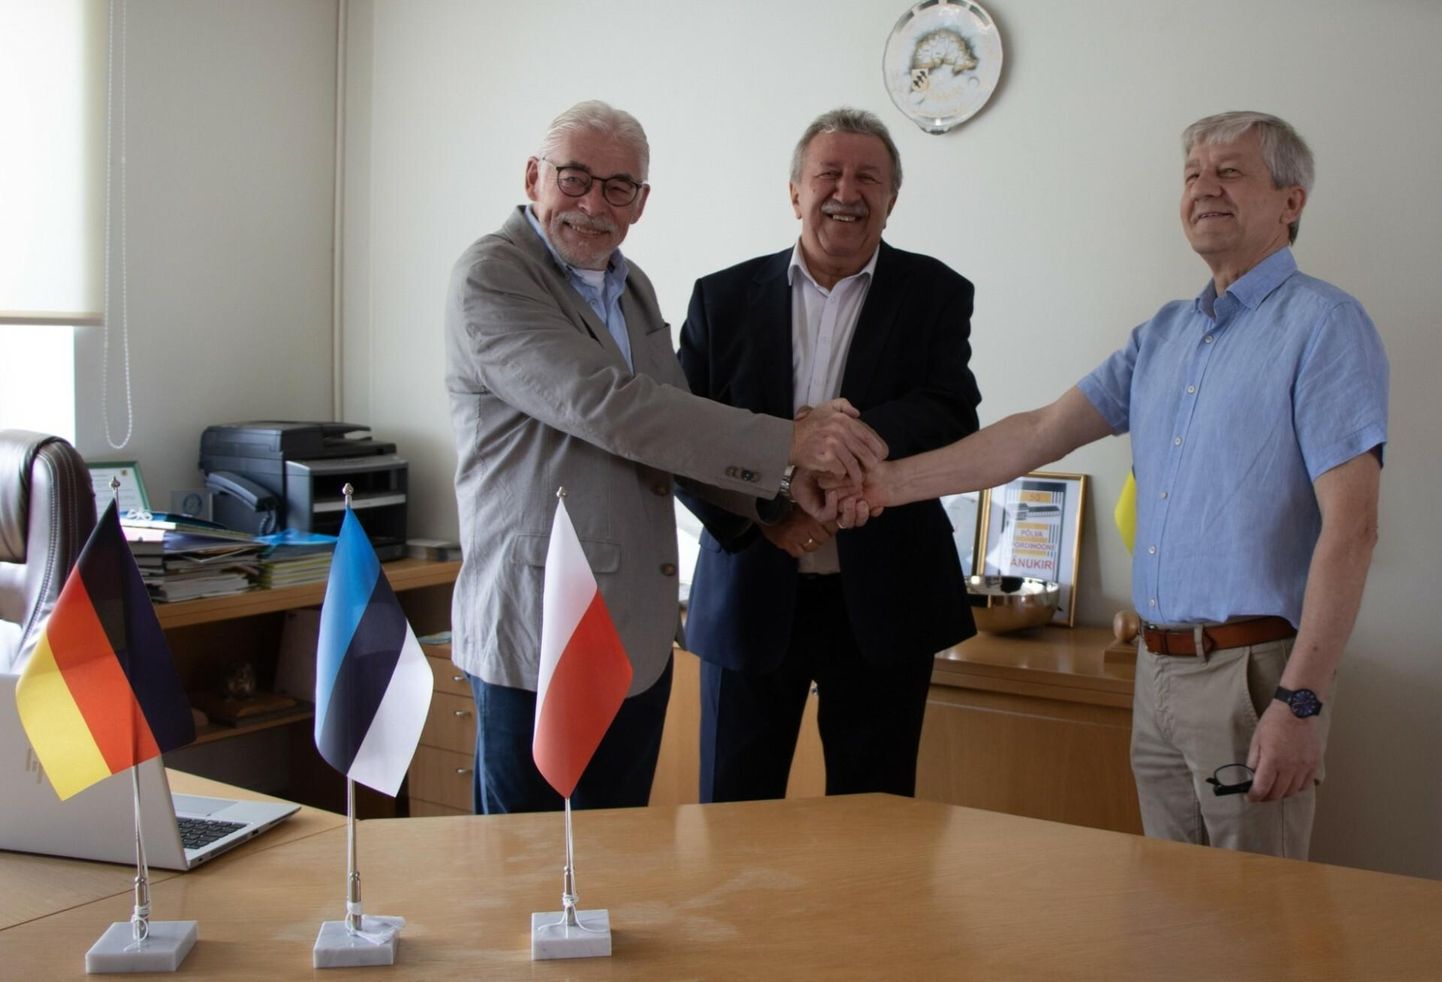 Saksamaa delegatsiooni juht Rüdiger Jankowski (vasakult), Poola delegatsiooni juht Stanisław Cybula ja Põlva vallavolikogu esimees Georg Pelisaar